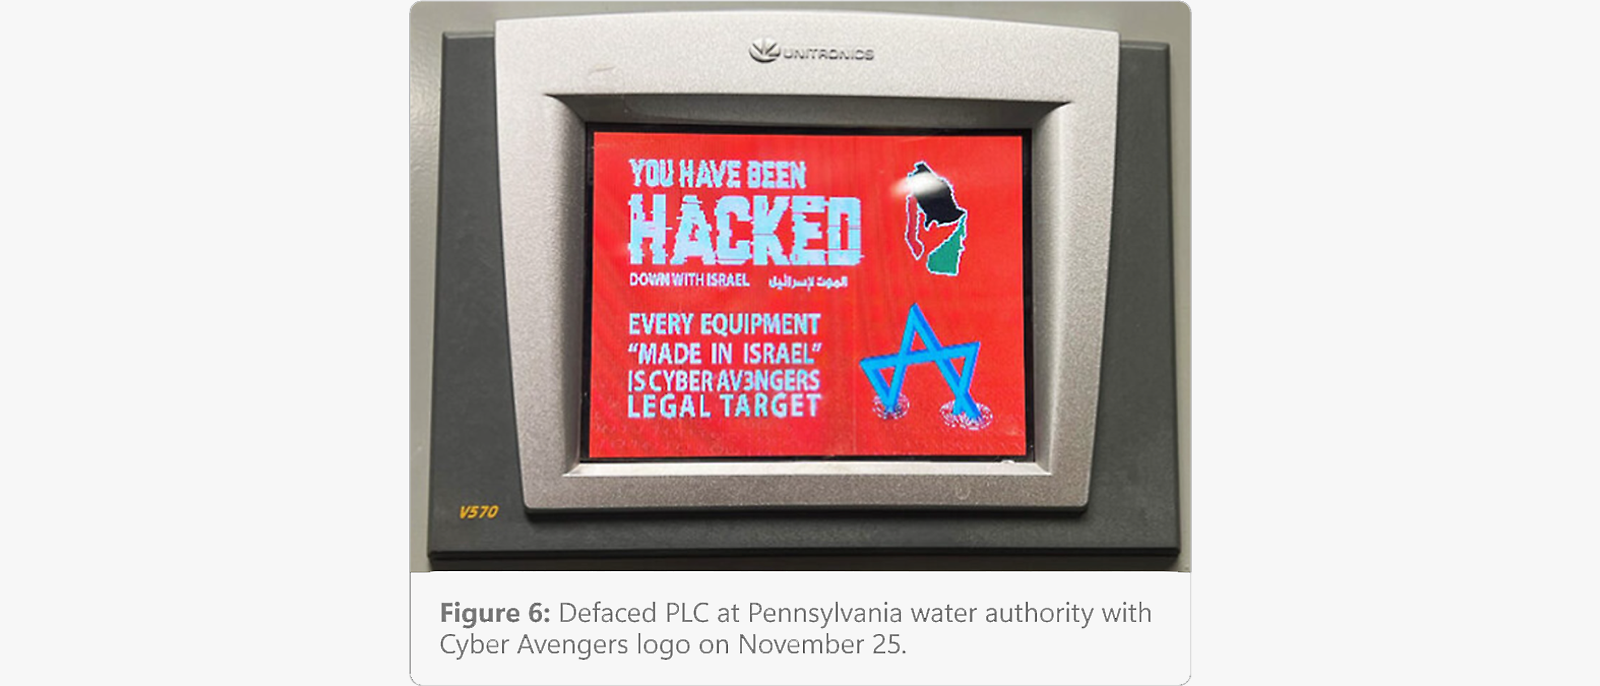 Un PLC comprometido en una empresa de distribución de agua de Pensilvania fue atacada con el logotipo de los Cyber Avengers el 25 de noviembre